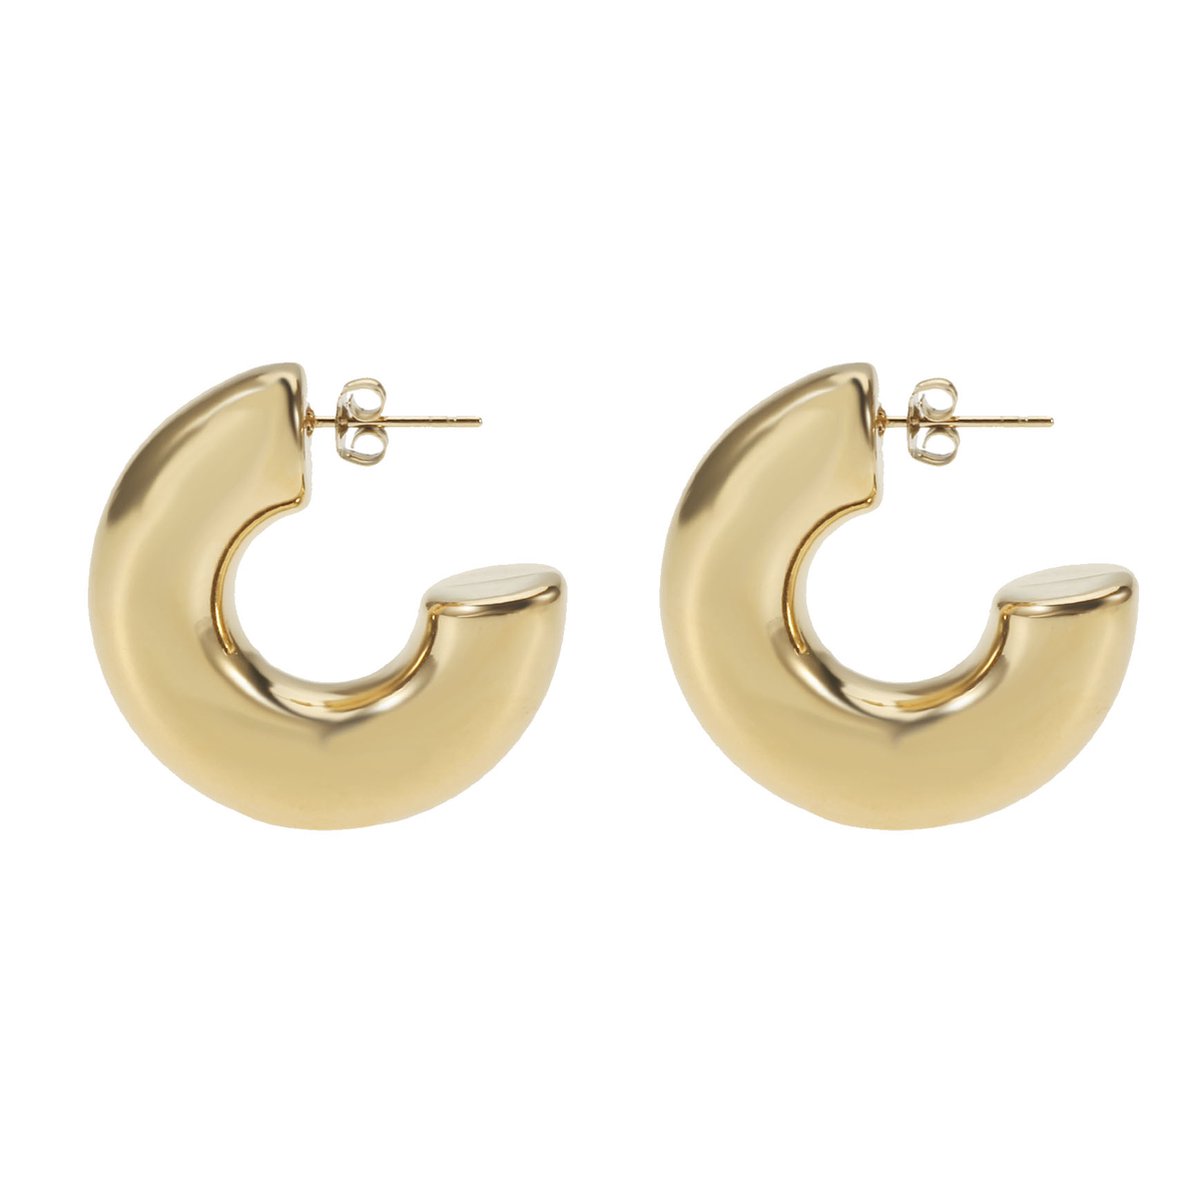 The Jewllery Club - Lois earrings gold - Oorbellen - Dames oorbellen - Chuncky hoops - Stainless steel - Goud - 3 cm